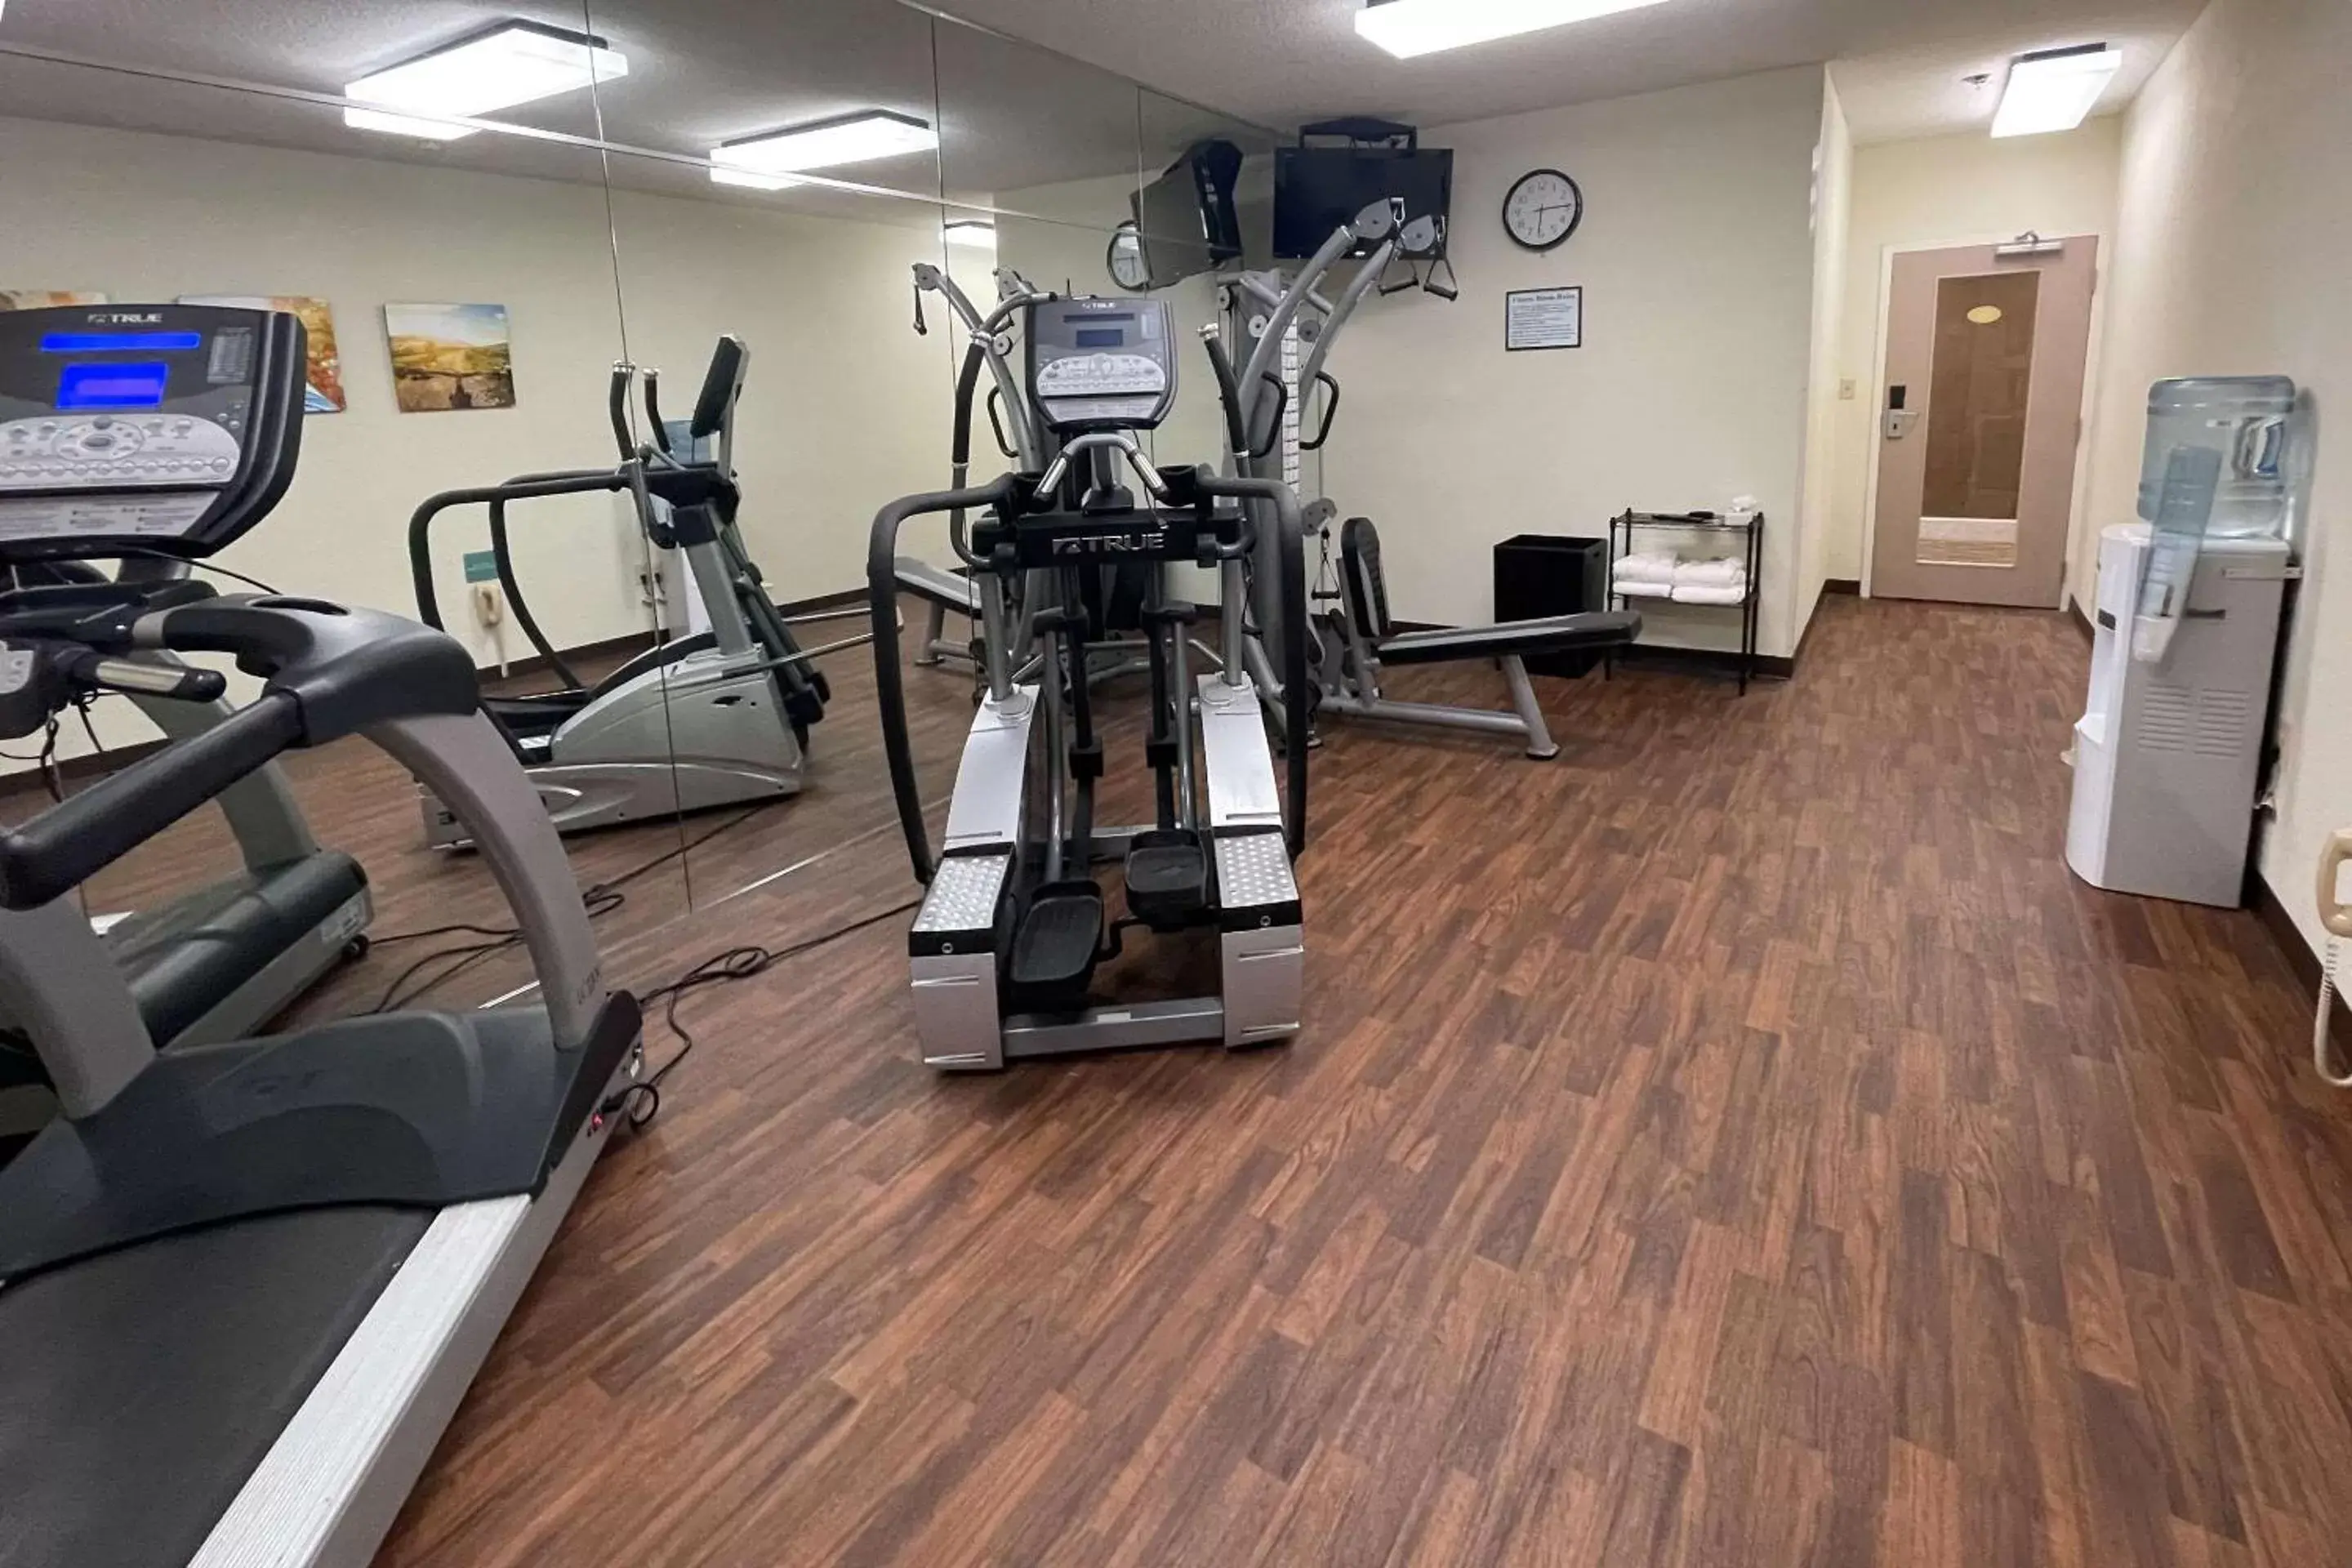 Fitness centre/facilities, Fitness Center/Facilities in Comfort Inn Pinehurst